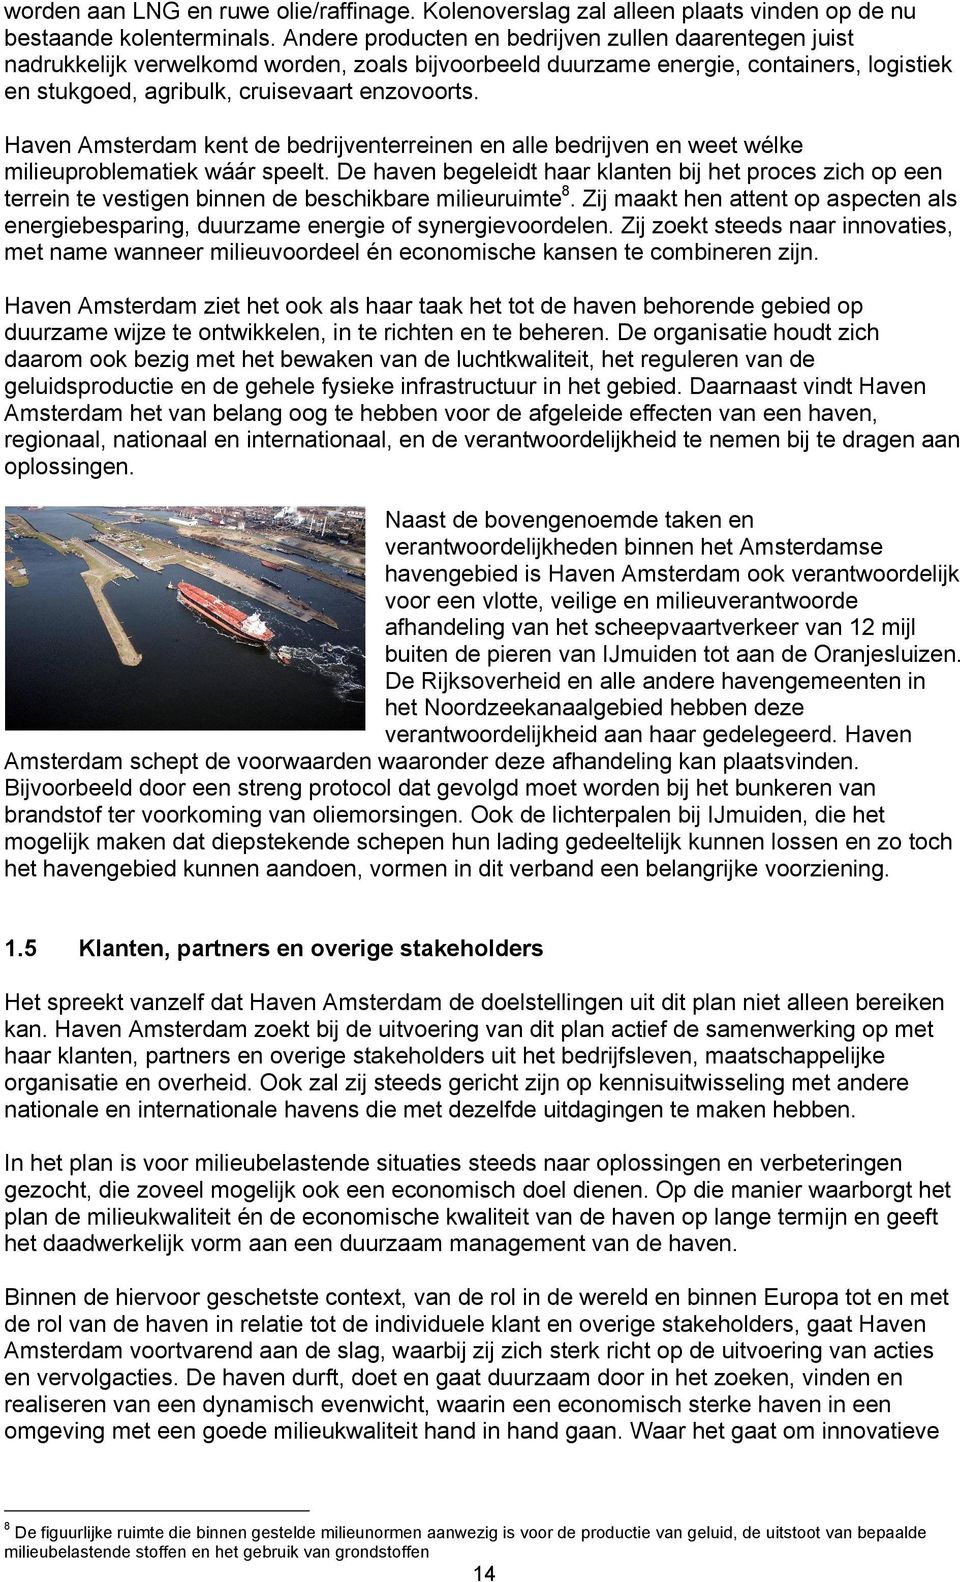 Haven Amsterdam kent de bedrijventerreinen en alle bedrijven en weet wélke milieuproblematiek wáár speelt.